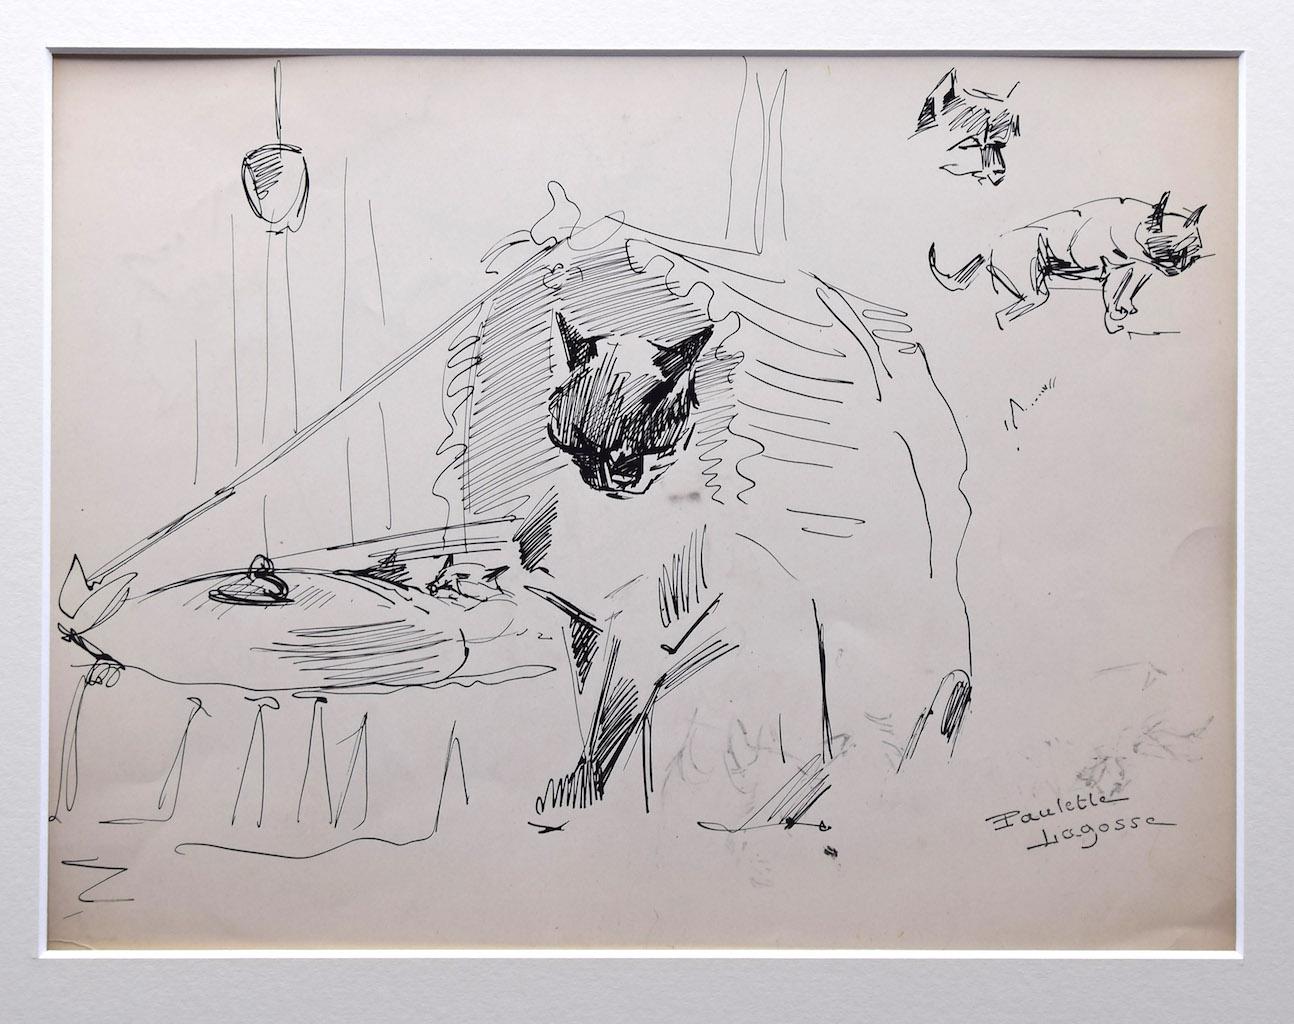 Le Chats est un dessin au stylo sur papier couleur ivoire, réalisé par Marie Paulette Lagosse (1921-1996).

Signé à la main en bas à droite au stylo. Avec un dessin d'un autre chat coloré au dos.

L'état de conservation des œuvres d'art est